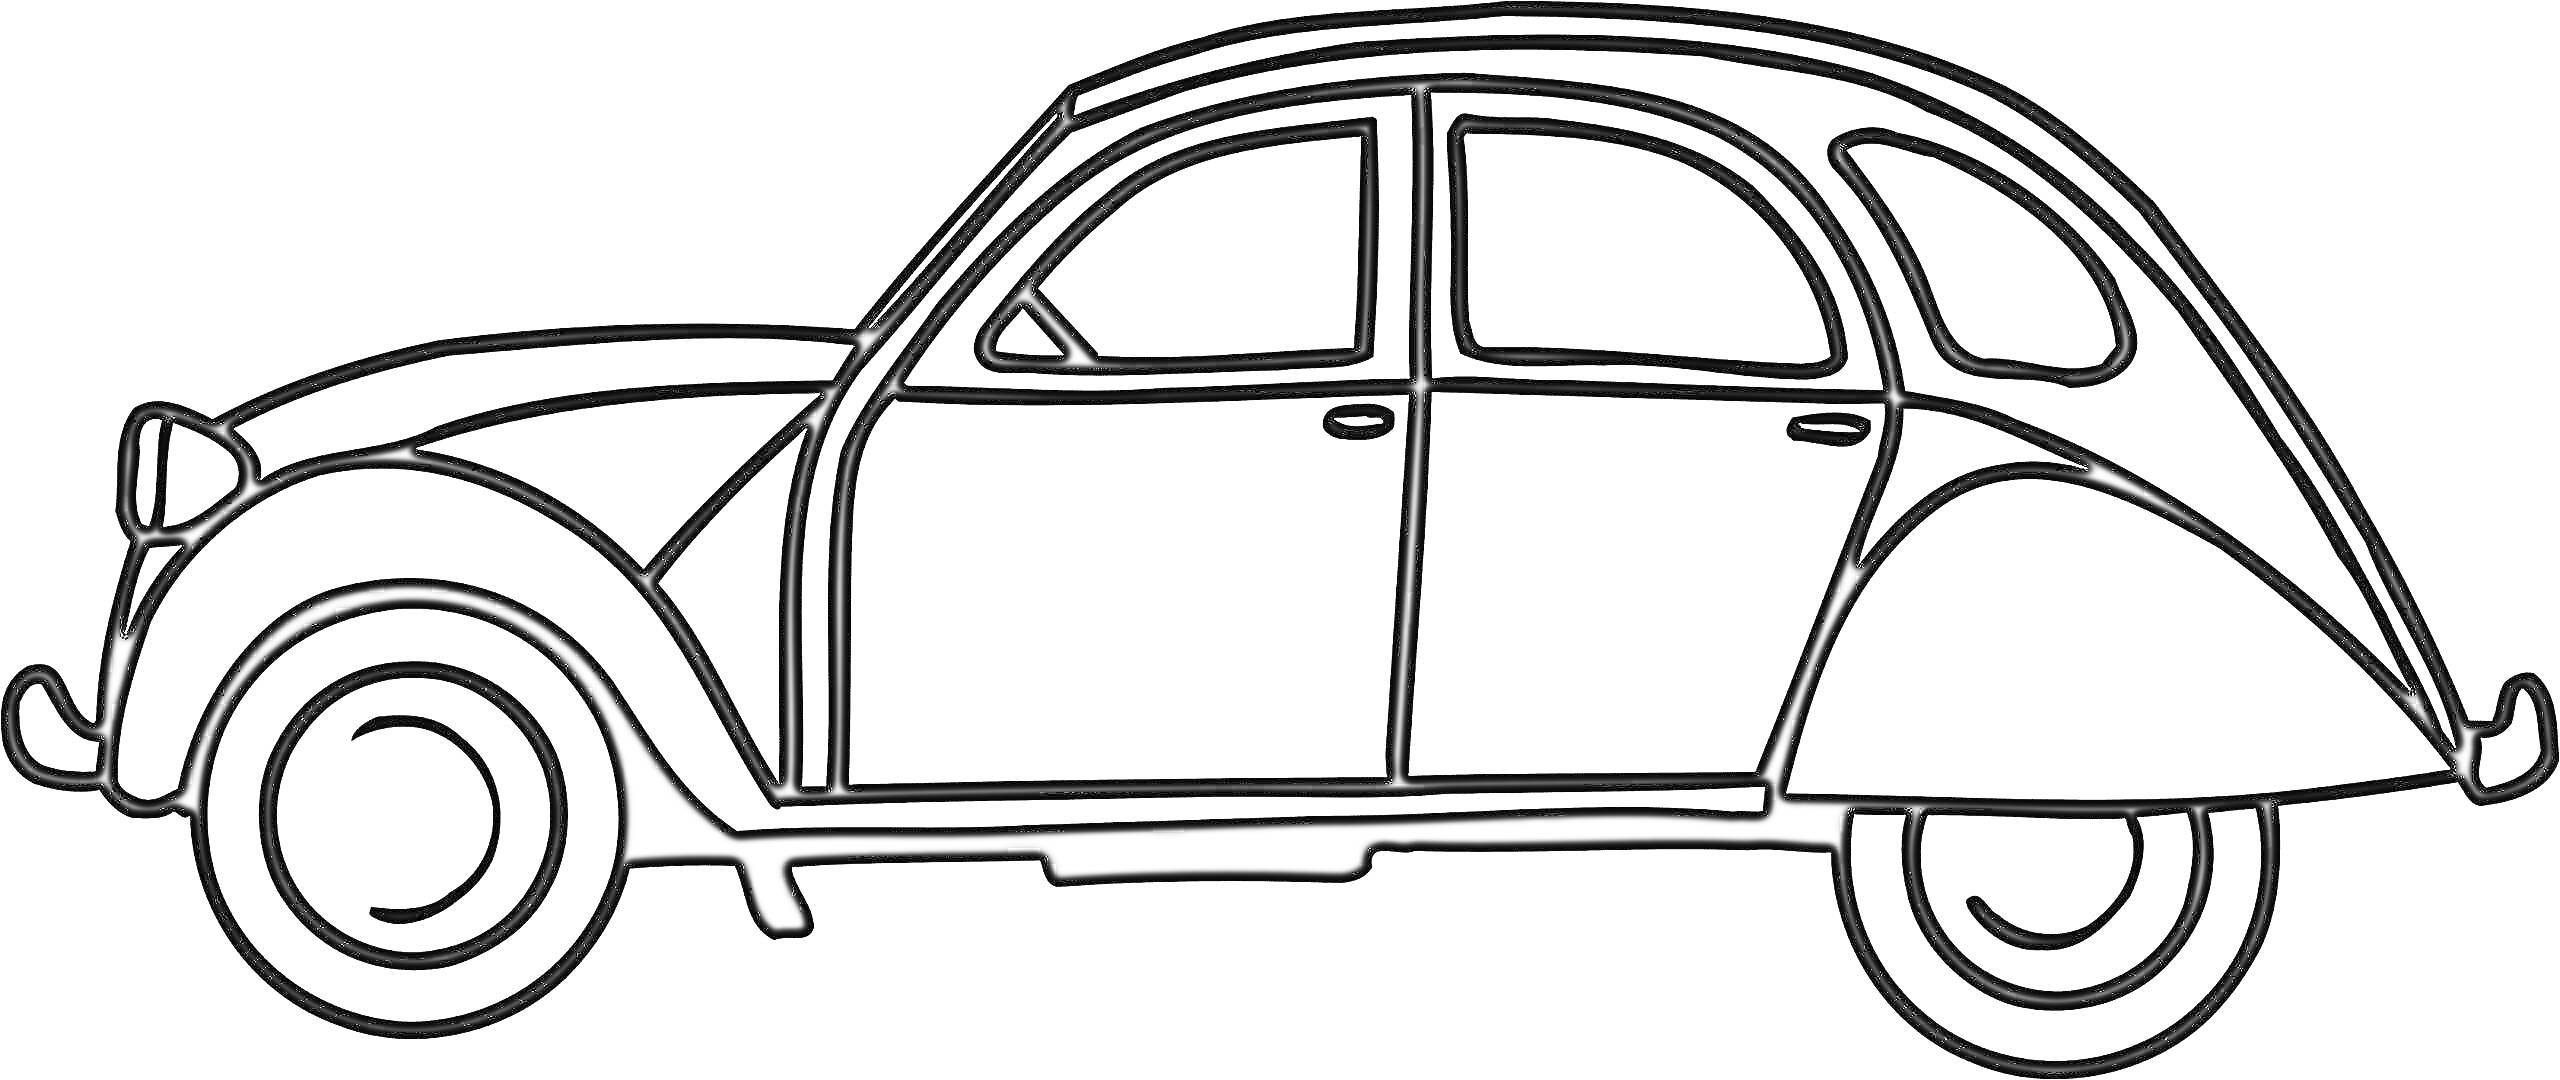 Раскраска Чёрно-белая раскраска машины, профиль классического автомобиля с двумя дверями и круглой крышей